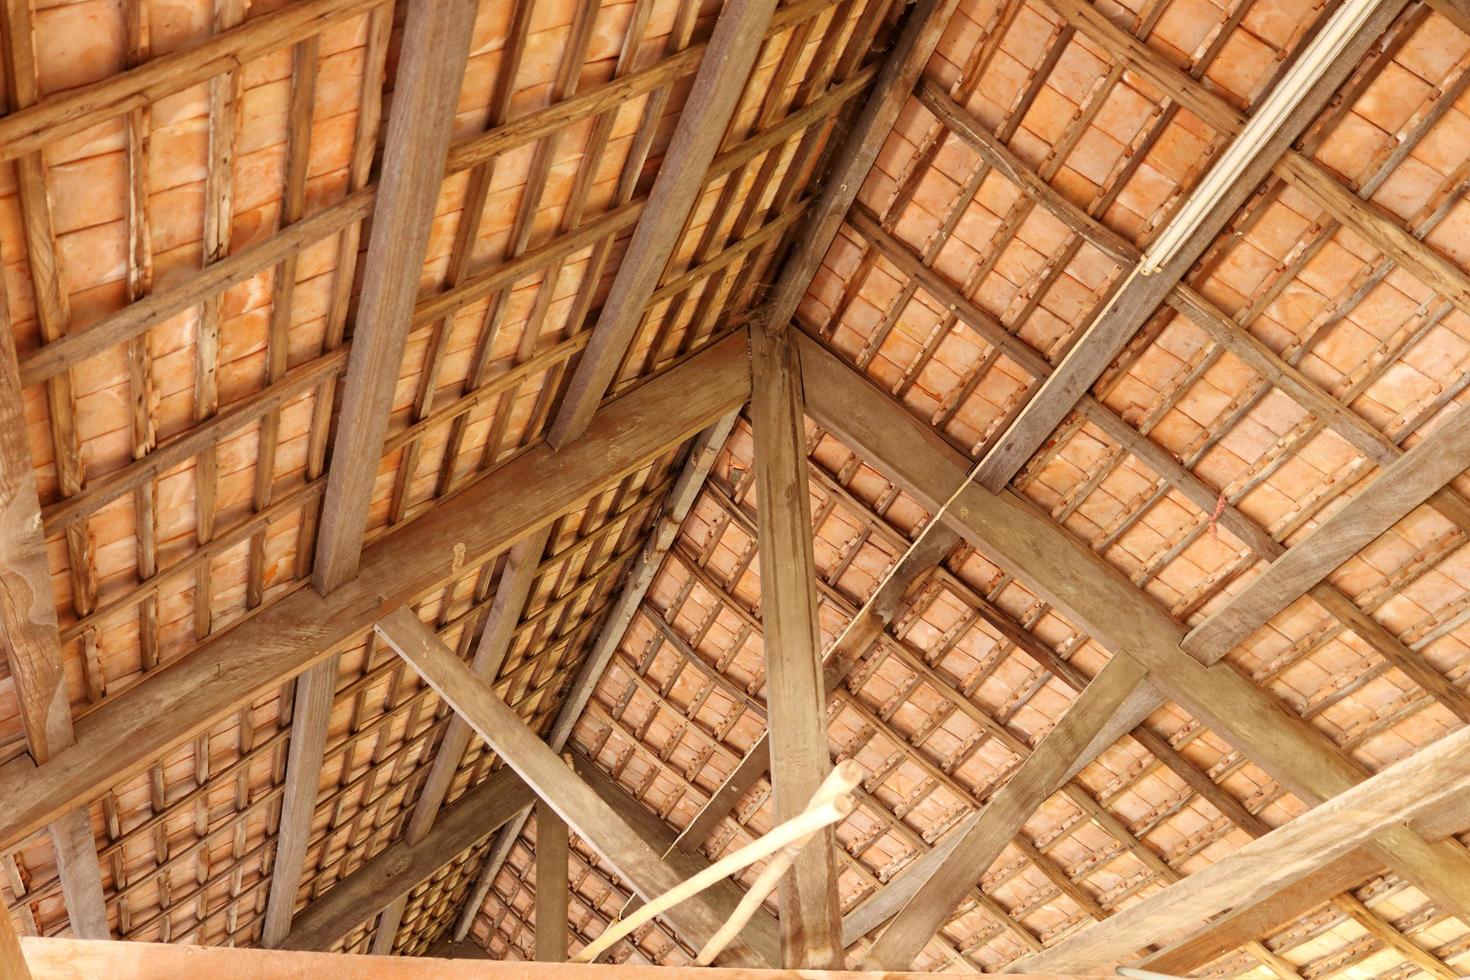 thailändischer stil unter dach des alten gebäudes, braune holzkonstruktion und dachziegel unter dach, thailand. foto